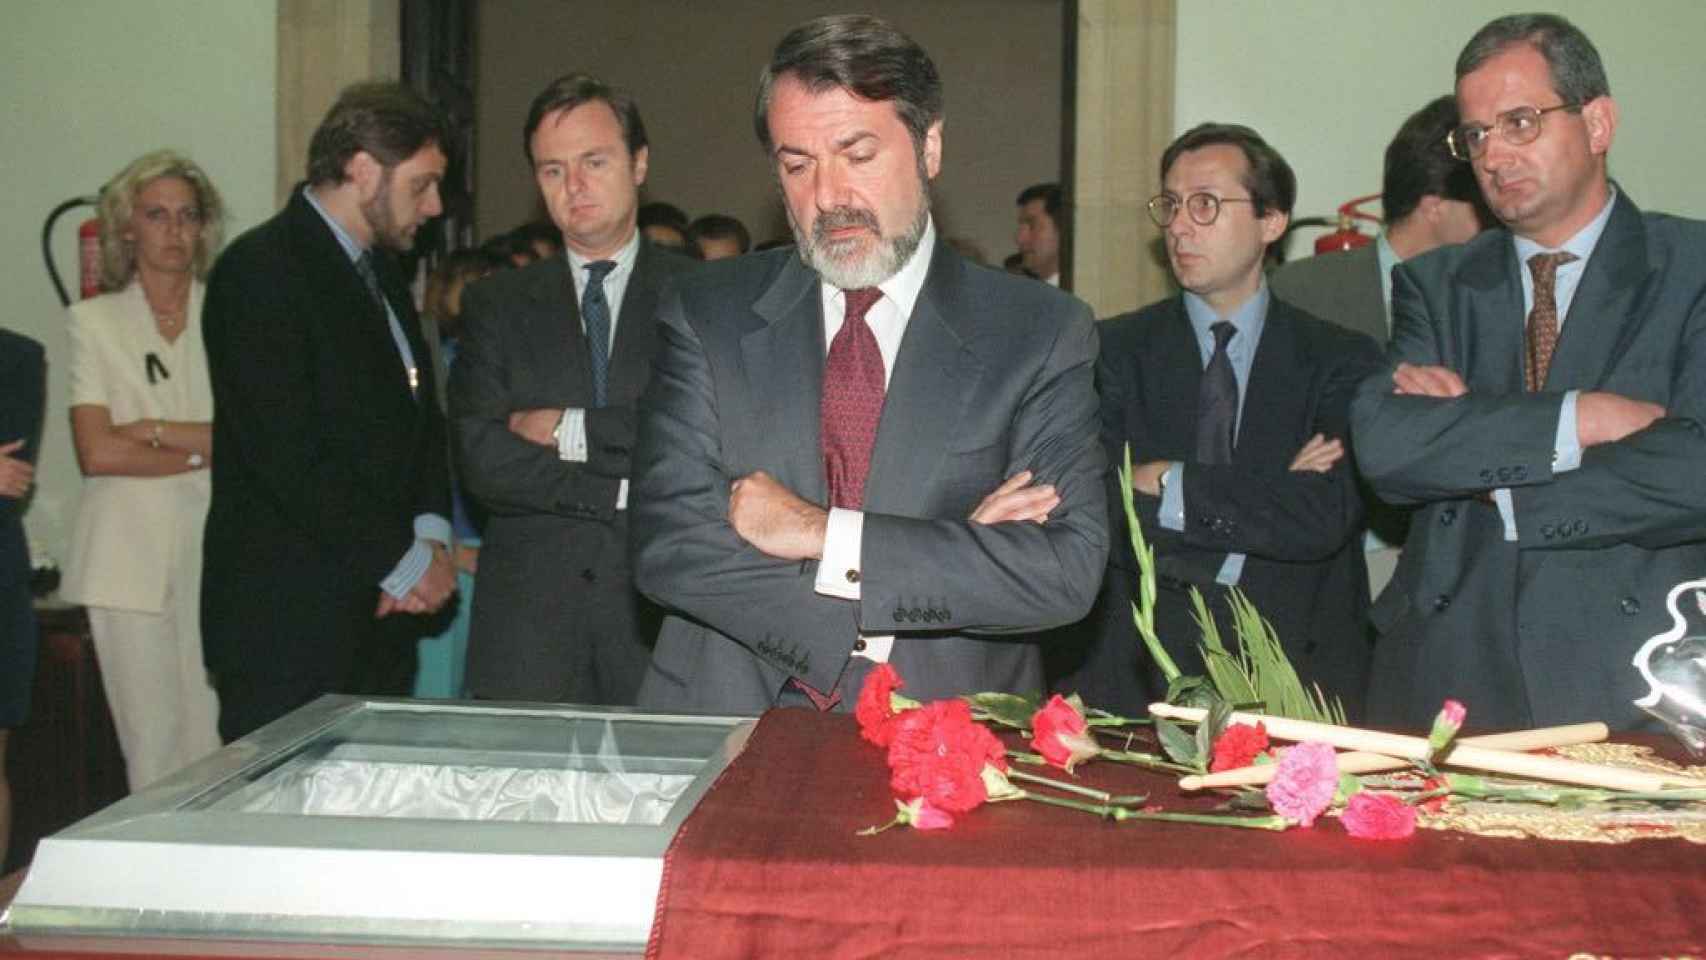 Jaime Mayor Oreja frente al ataud de Miguel Ángel Blanco, cubierto por la bandera de Ermua. 14 de julio de 1997.